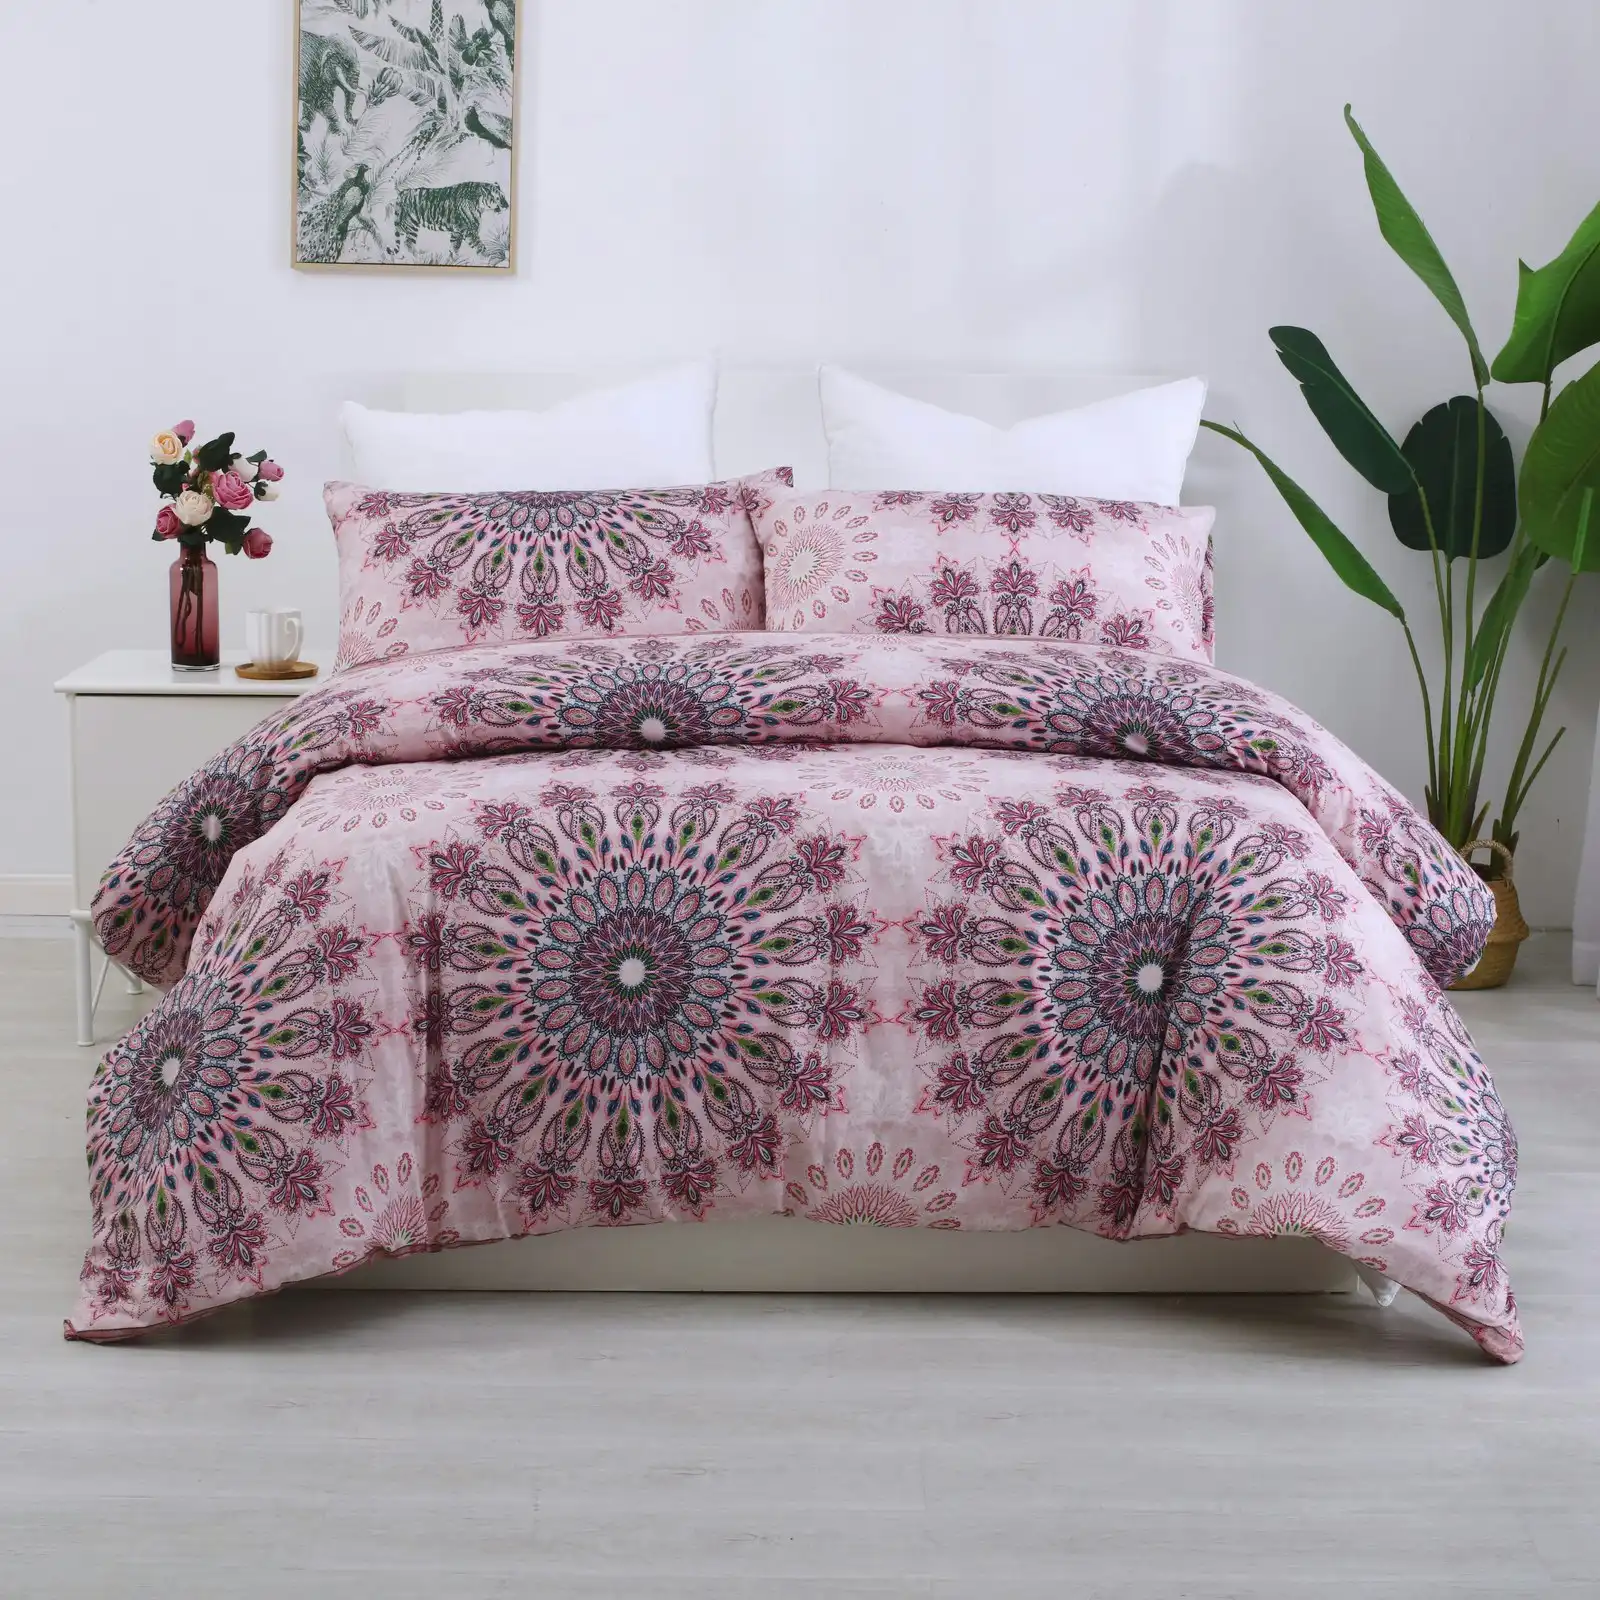 Dreamaker Printed Quilt Cover Set - King Bed Desert Flower